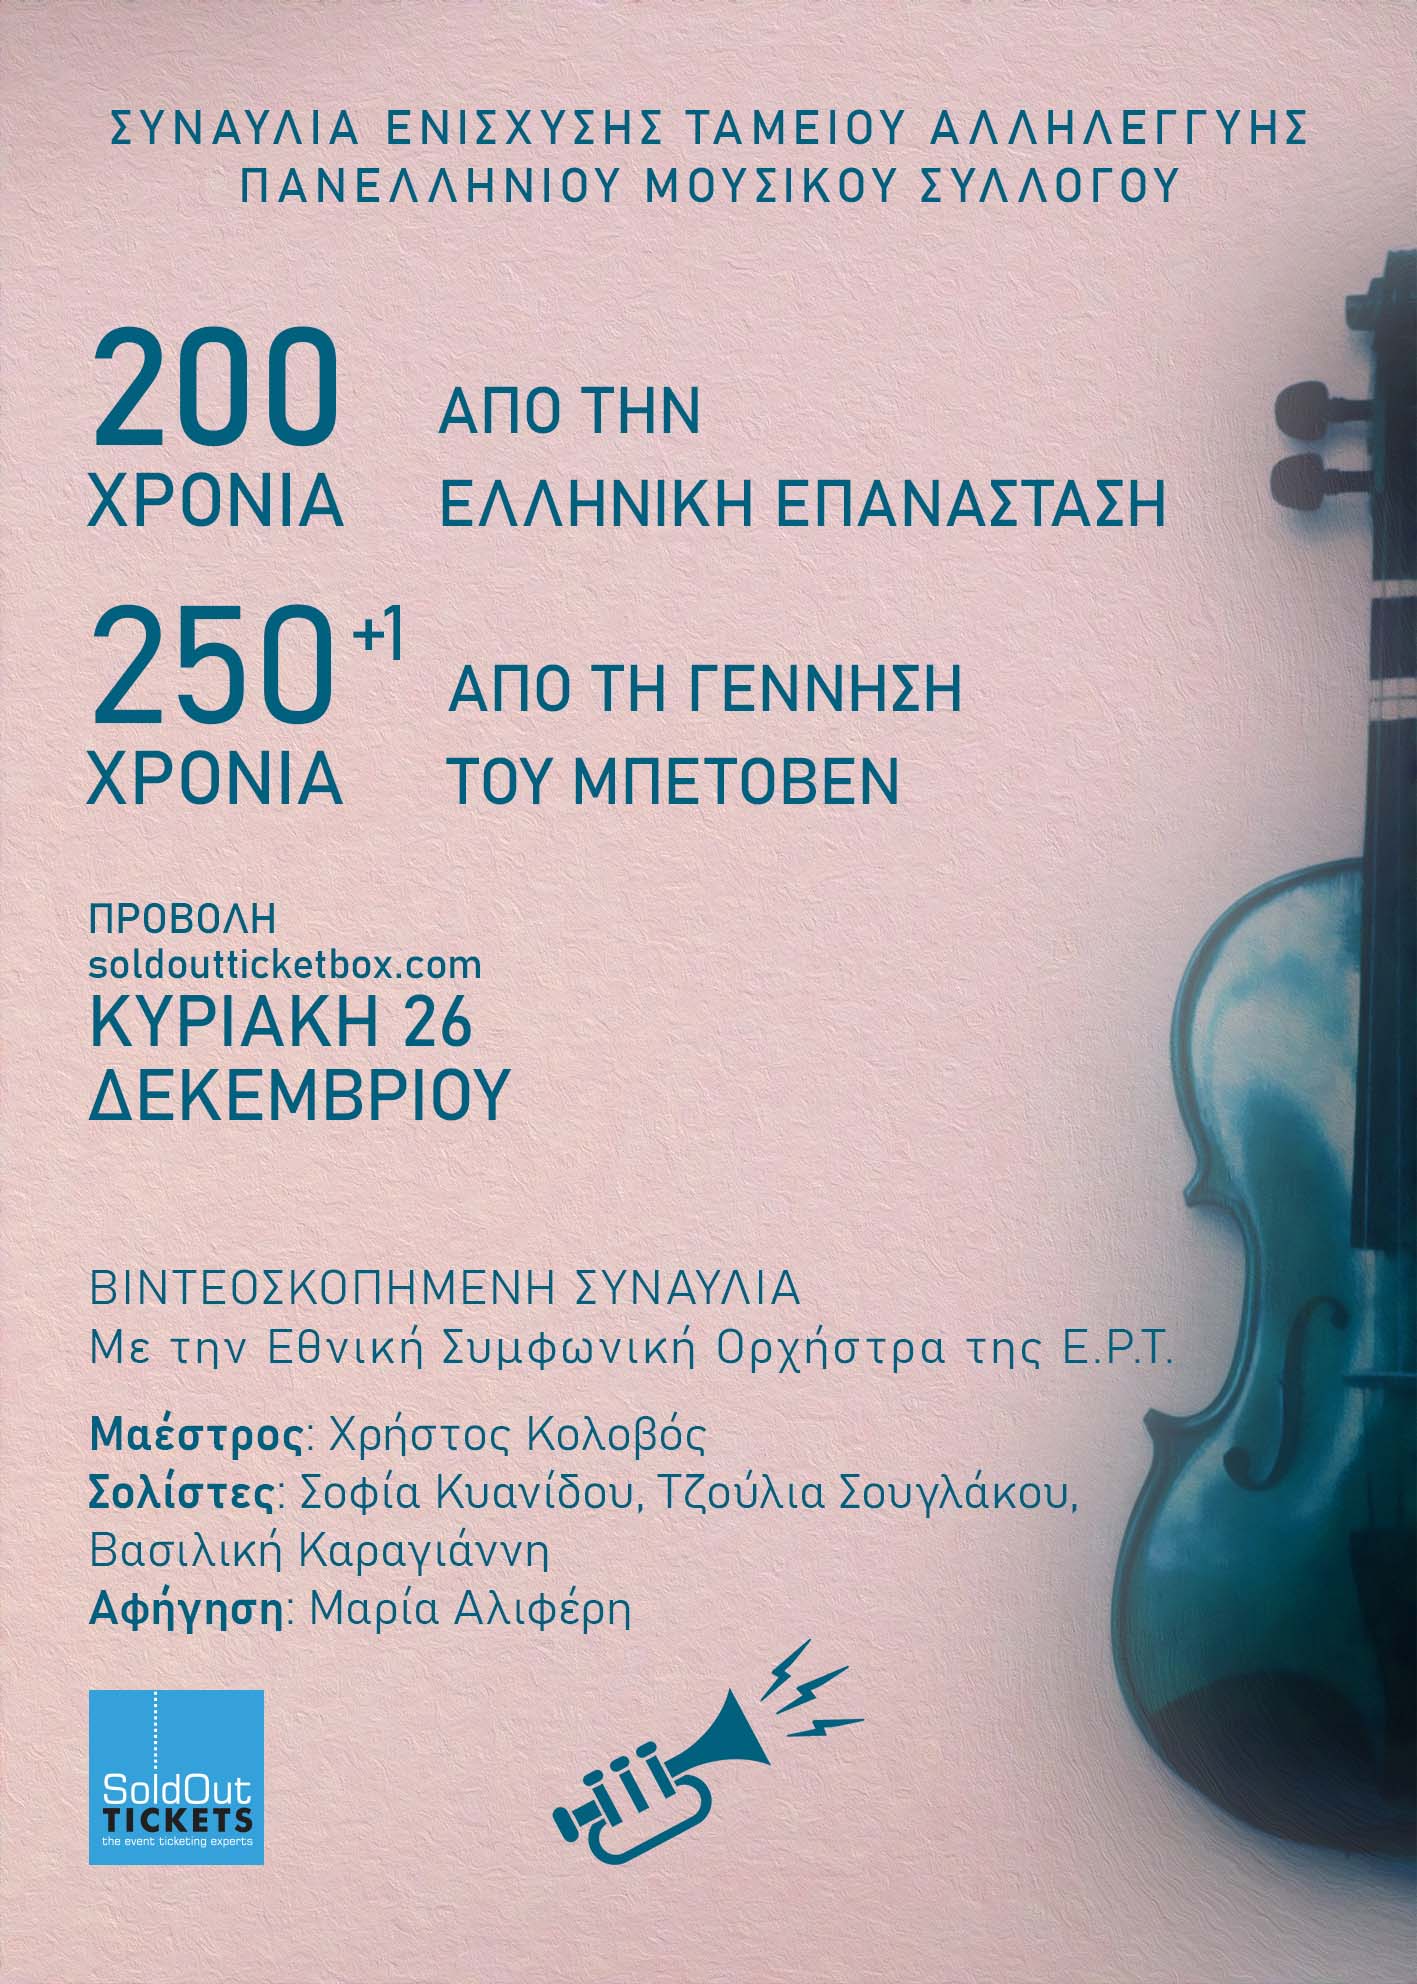 Συναυλία Αλληλεγγύης  από τον Πανελλήνιο Μουσικό Σύλλογο για τα 200 χρόνια από την Ελληνική Επανάσταση   και 250+1 από τη γέννηση του Μπετόβεν